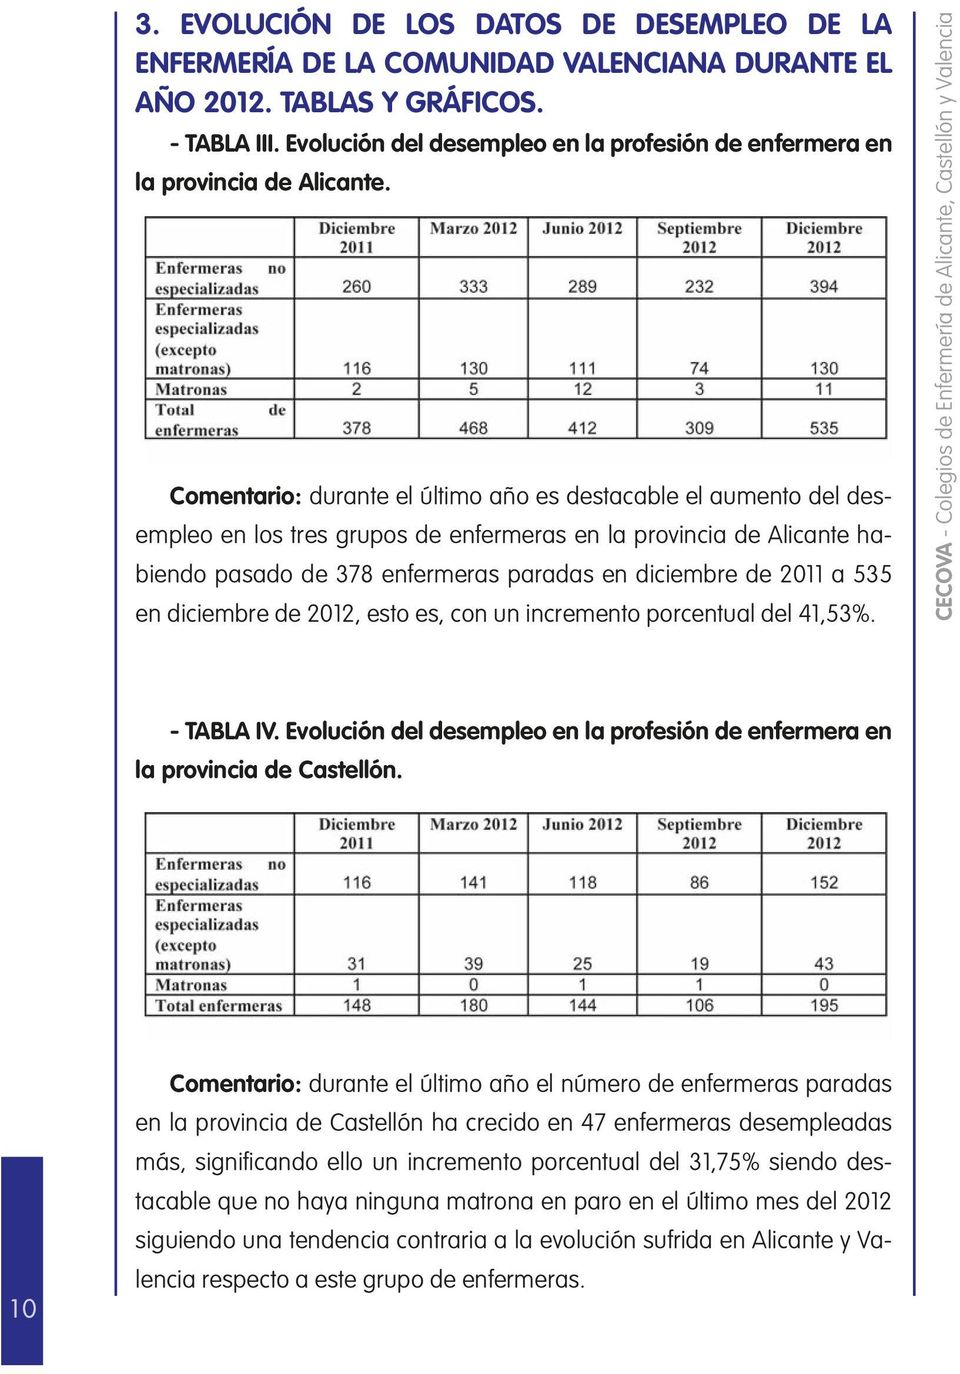 Comentario: durante el último año es destacable el aumento del desempleo en los tres grupos de enfermeras en la provincia de Alicante habiendo pasado de 378 enfermeras paradas en diciembre de 2011 a